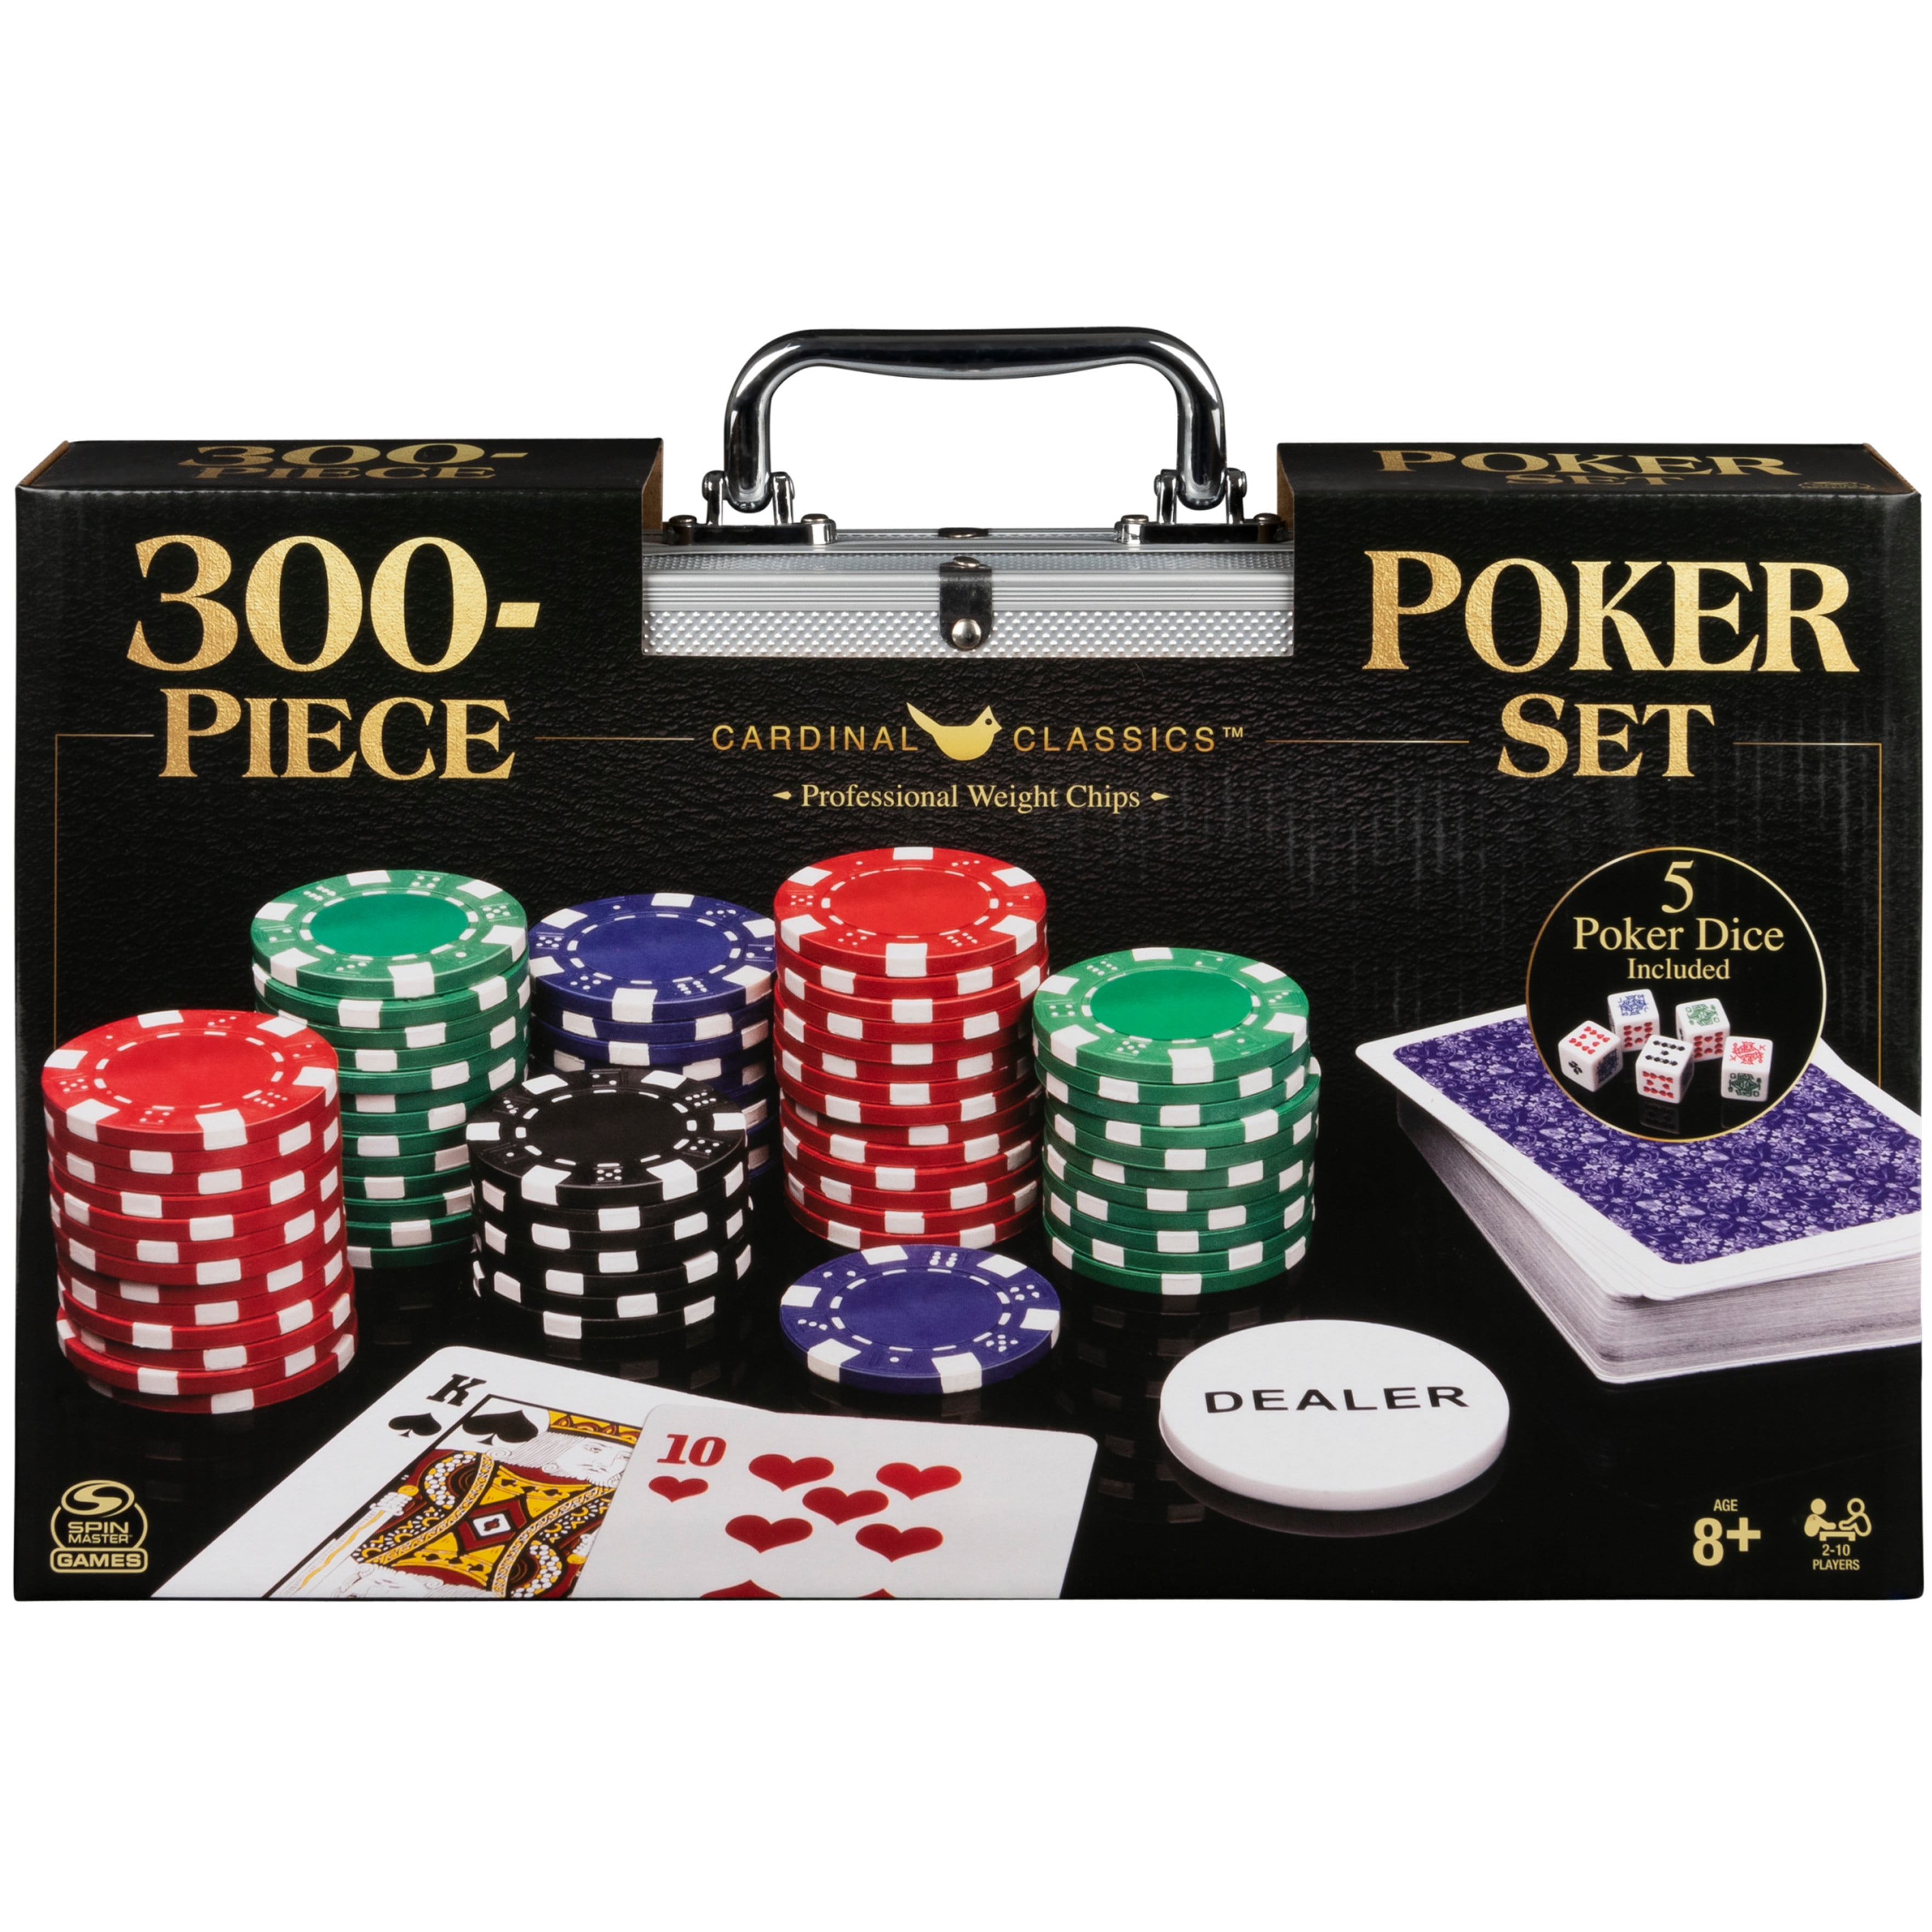 Golden POKER PRINCESS Casino Poker Card Guard Cover Protector Texas Poker Cards 